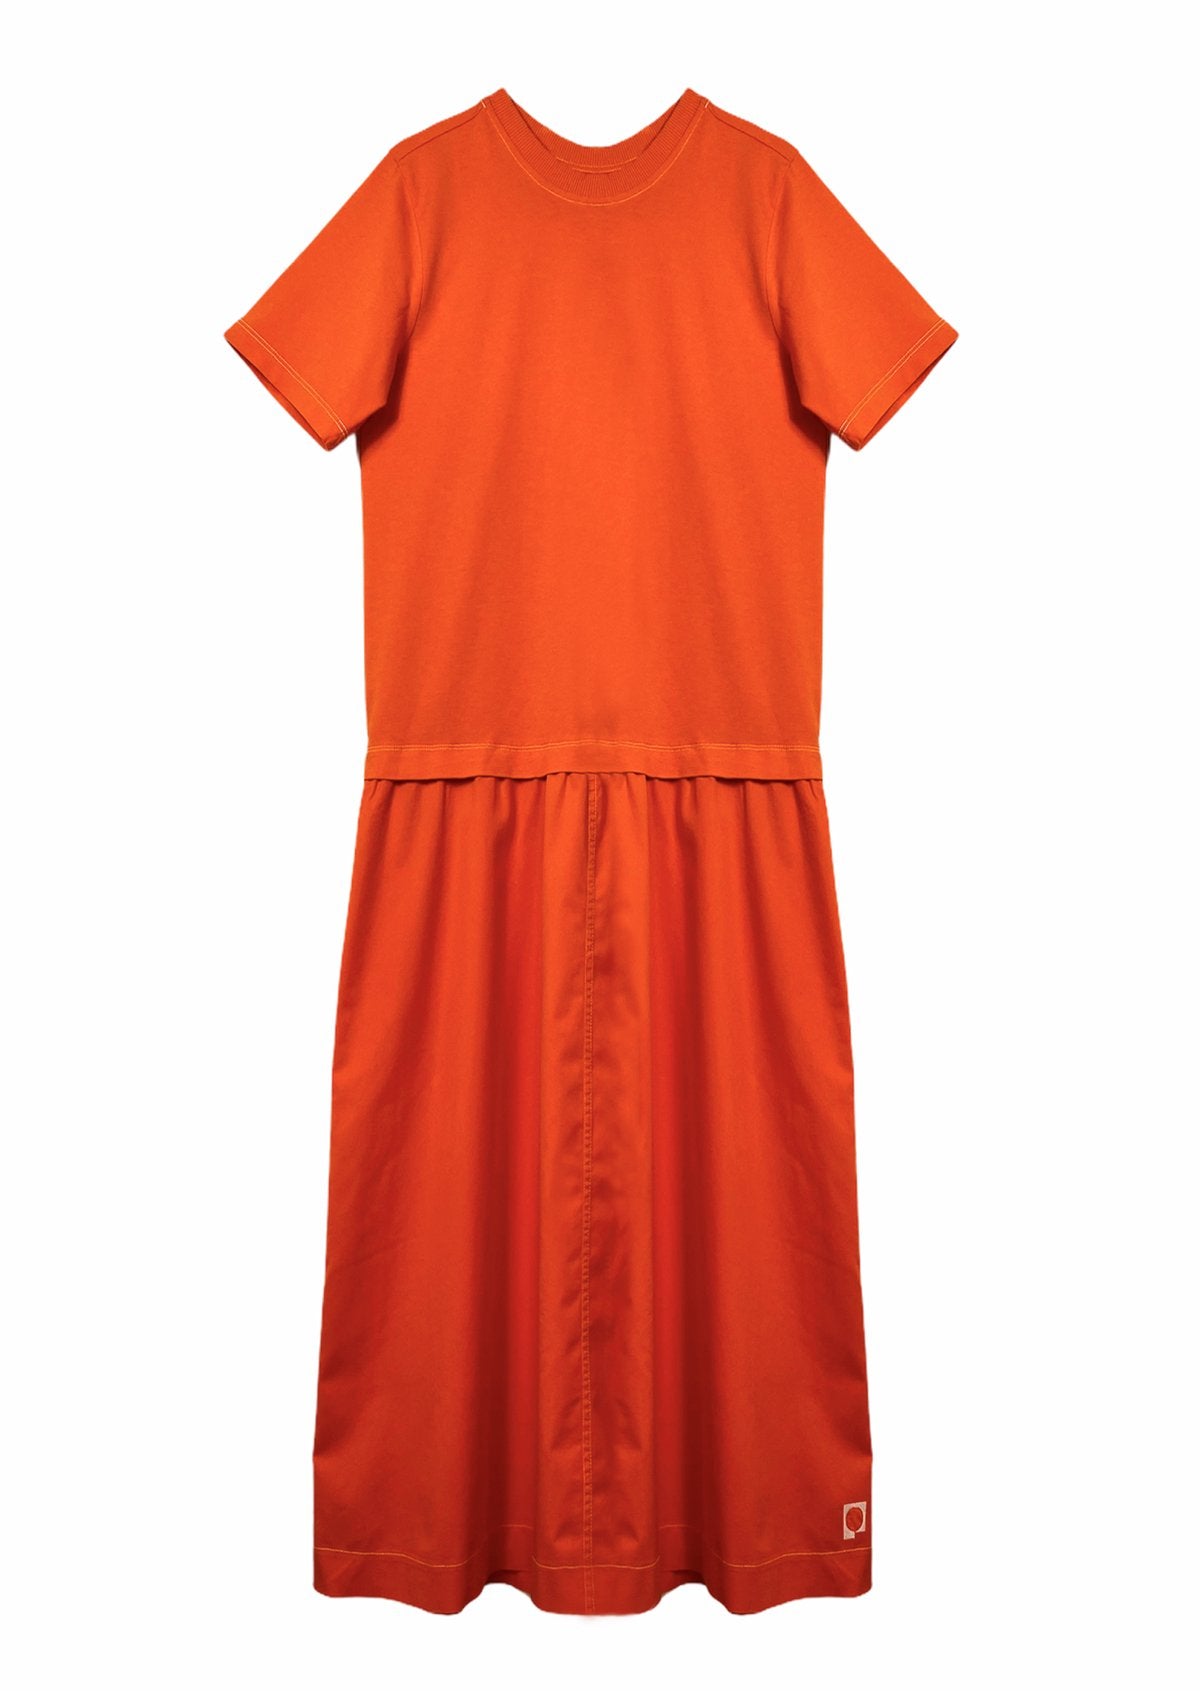 Rotes Jersey Kleid TARA aus reiner Bio Baumwolle